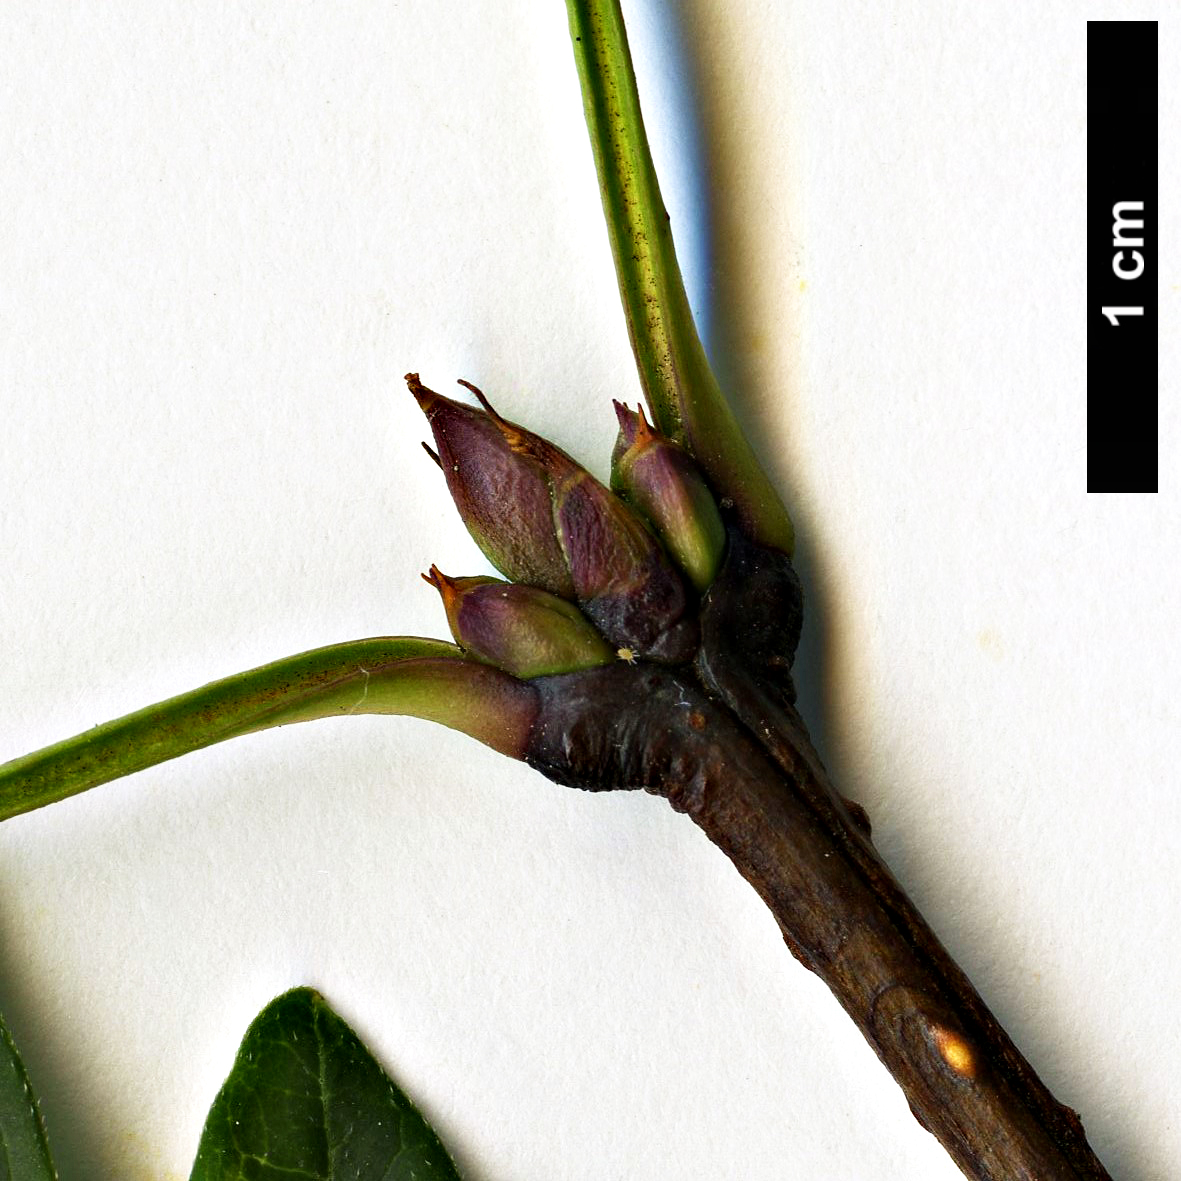 High resolution image: Family: Oleaceae - Genus: Syringa - Taxon: pinnatifolia